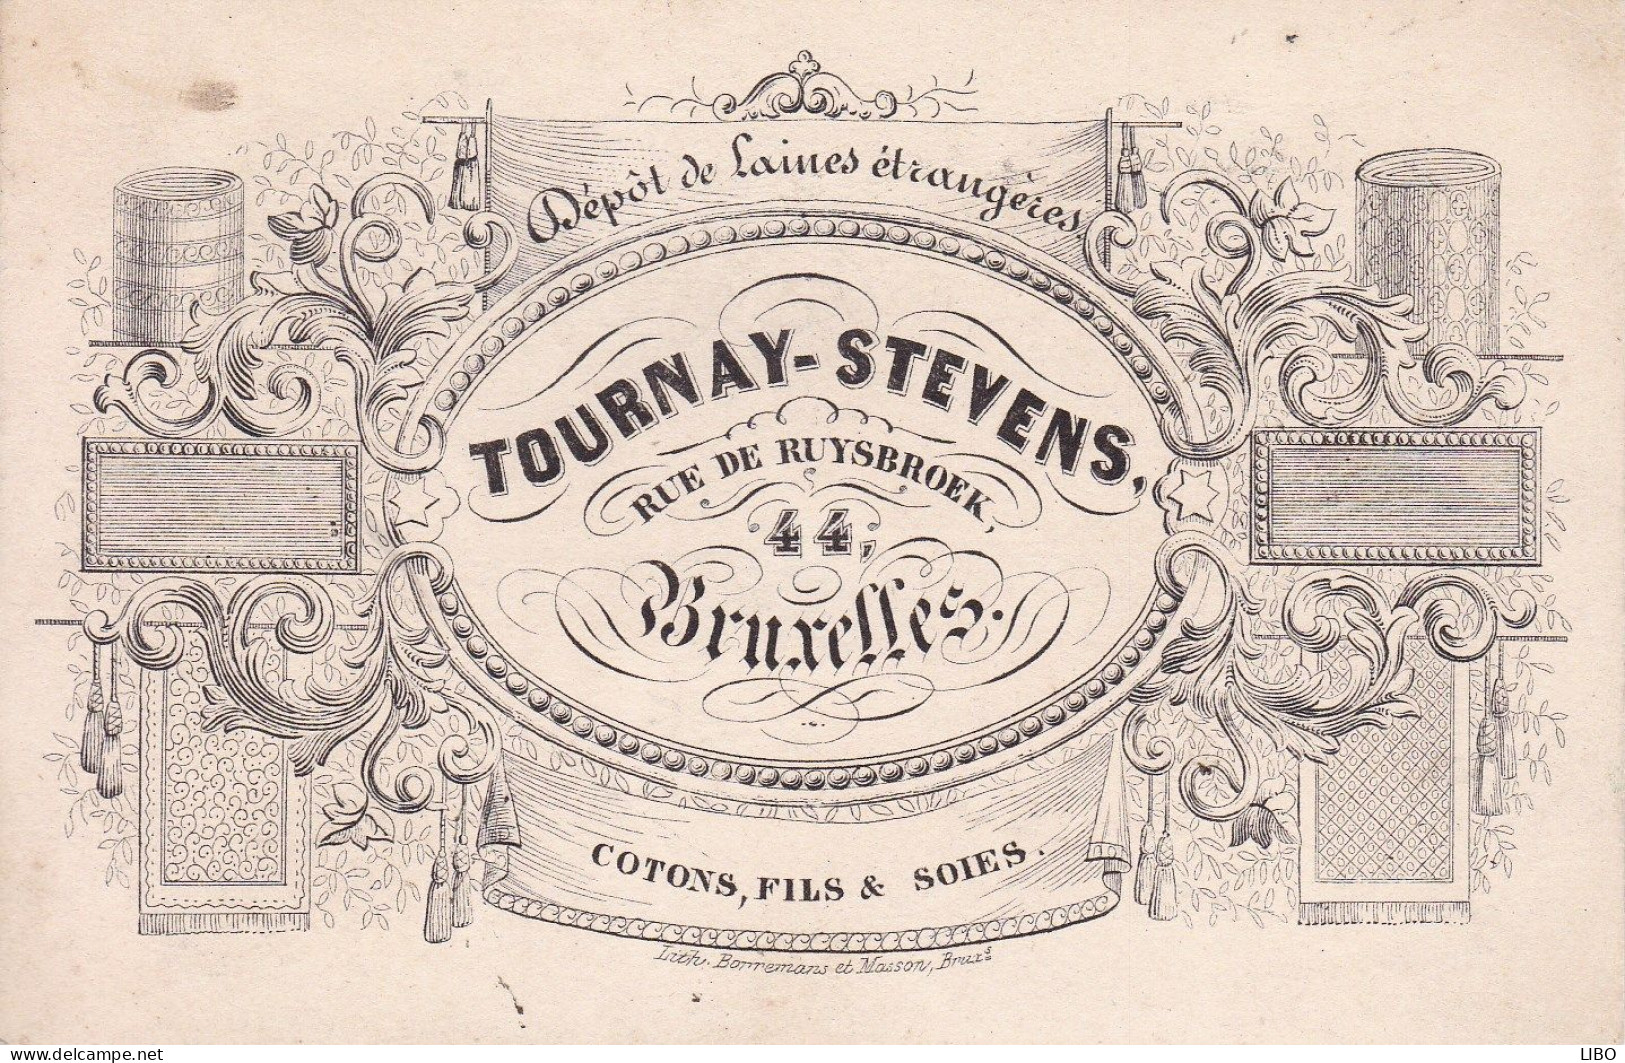 BRUXELLES Laines TOURNAY-STEVENS Rue De Ruysbroek Cotons Fils Et Soies Carte De Visite Format Carte Postale C. 1860 - Visitekaartjes